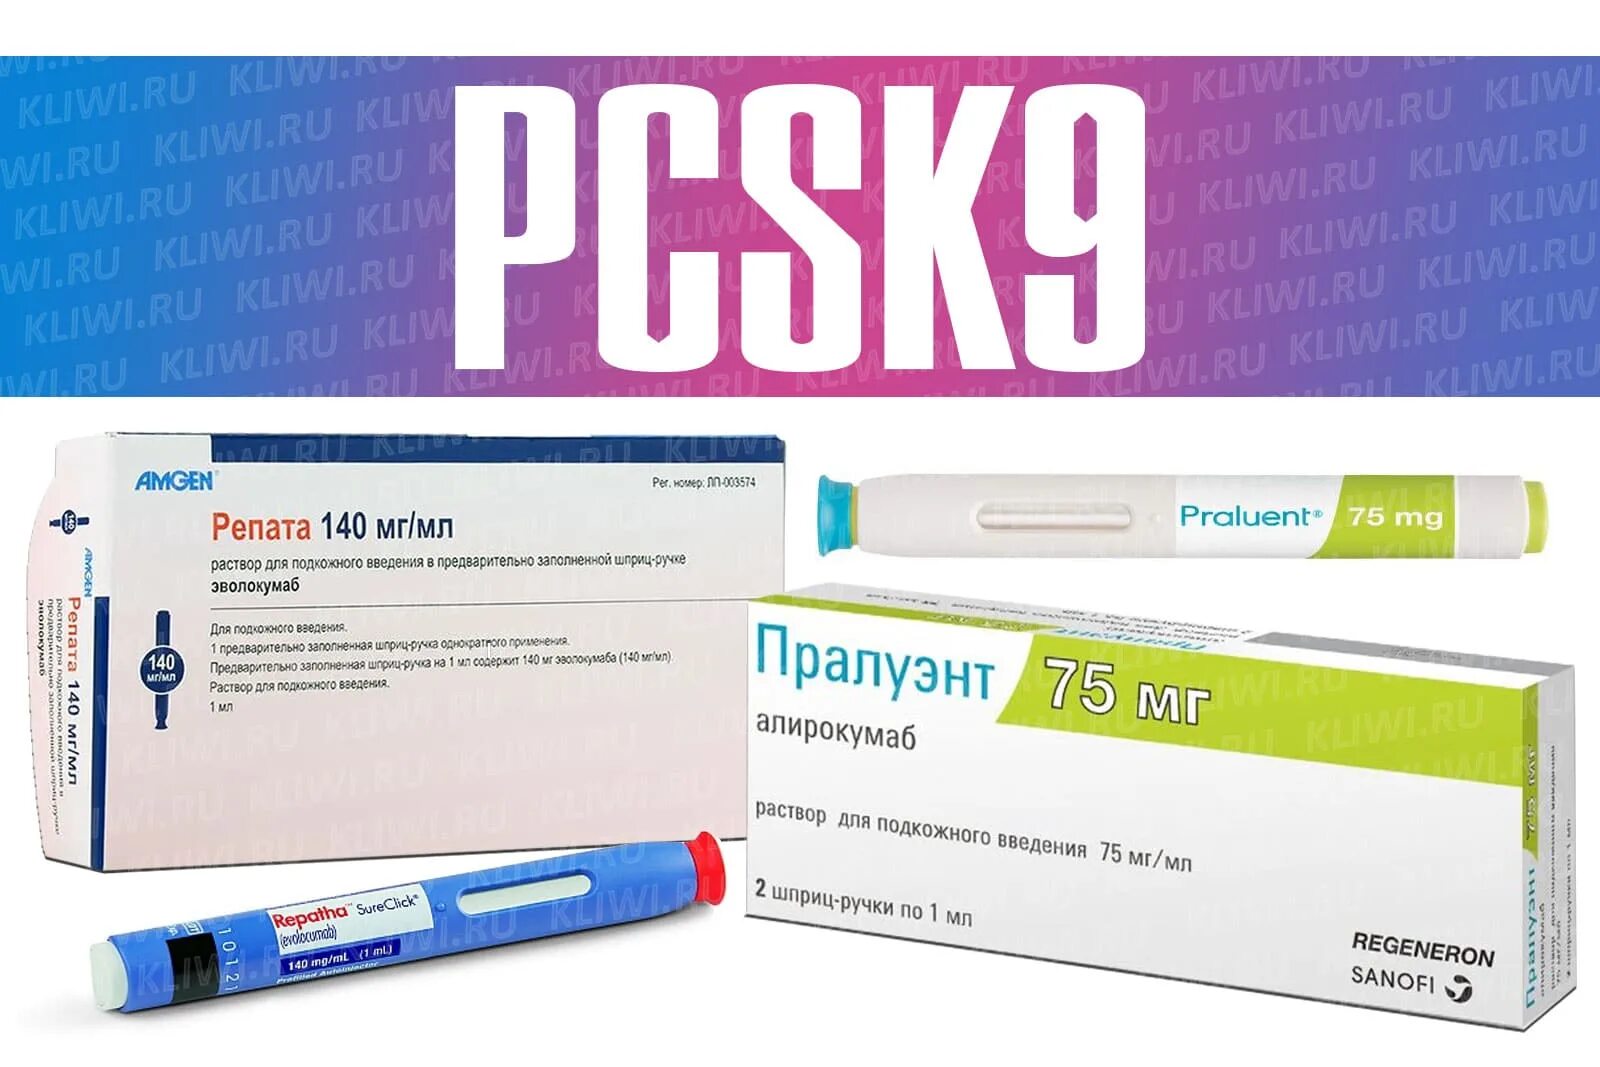 Ингибиторы pcsk9 препараты. Эволокумаб Репата. Репата уколы. Пралуэнт и Репата. Пралуэнт цена